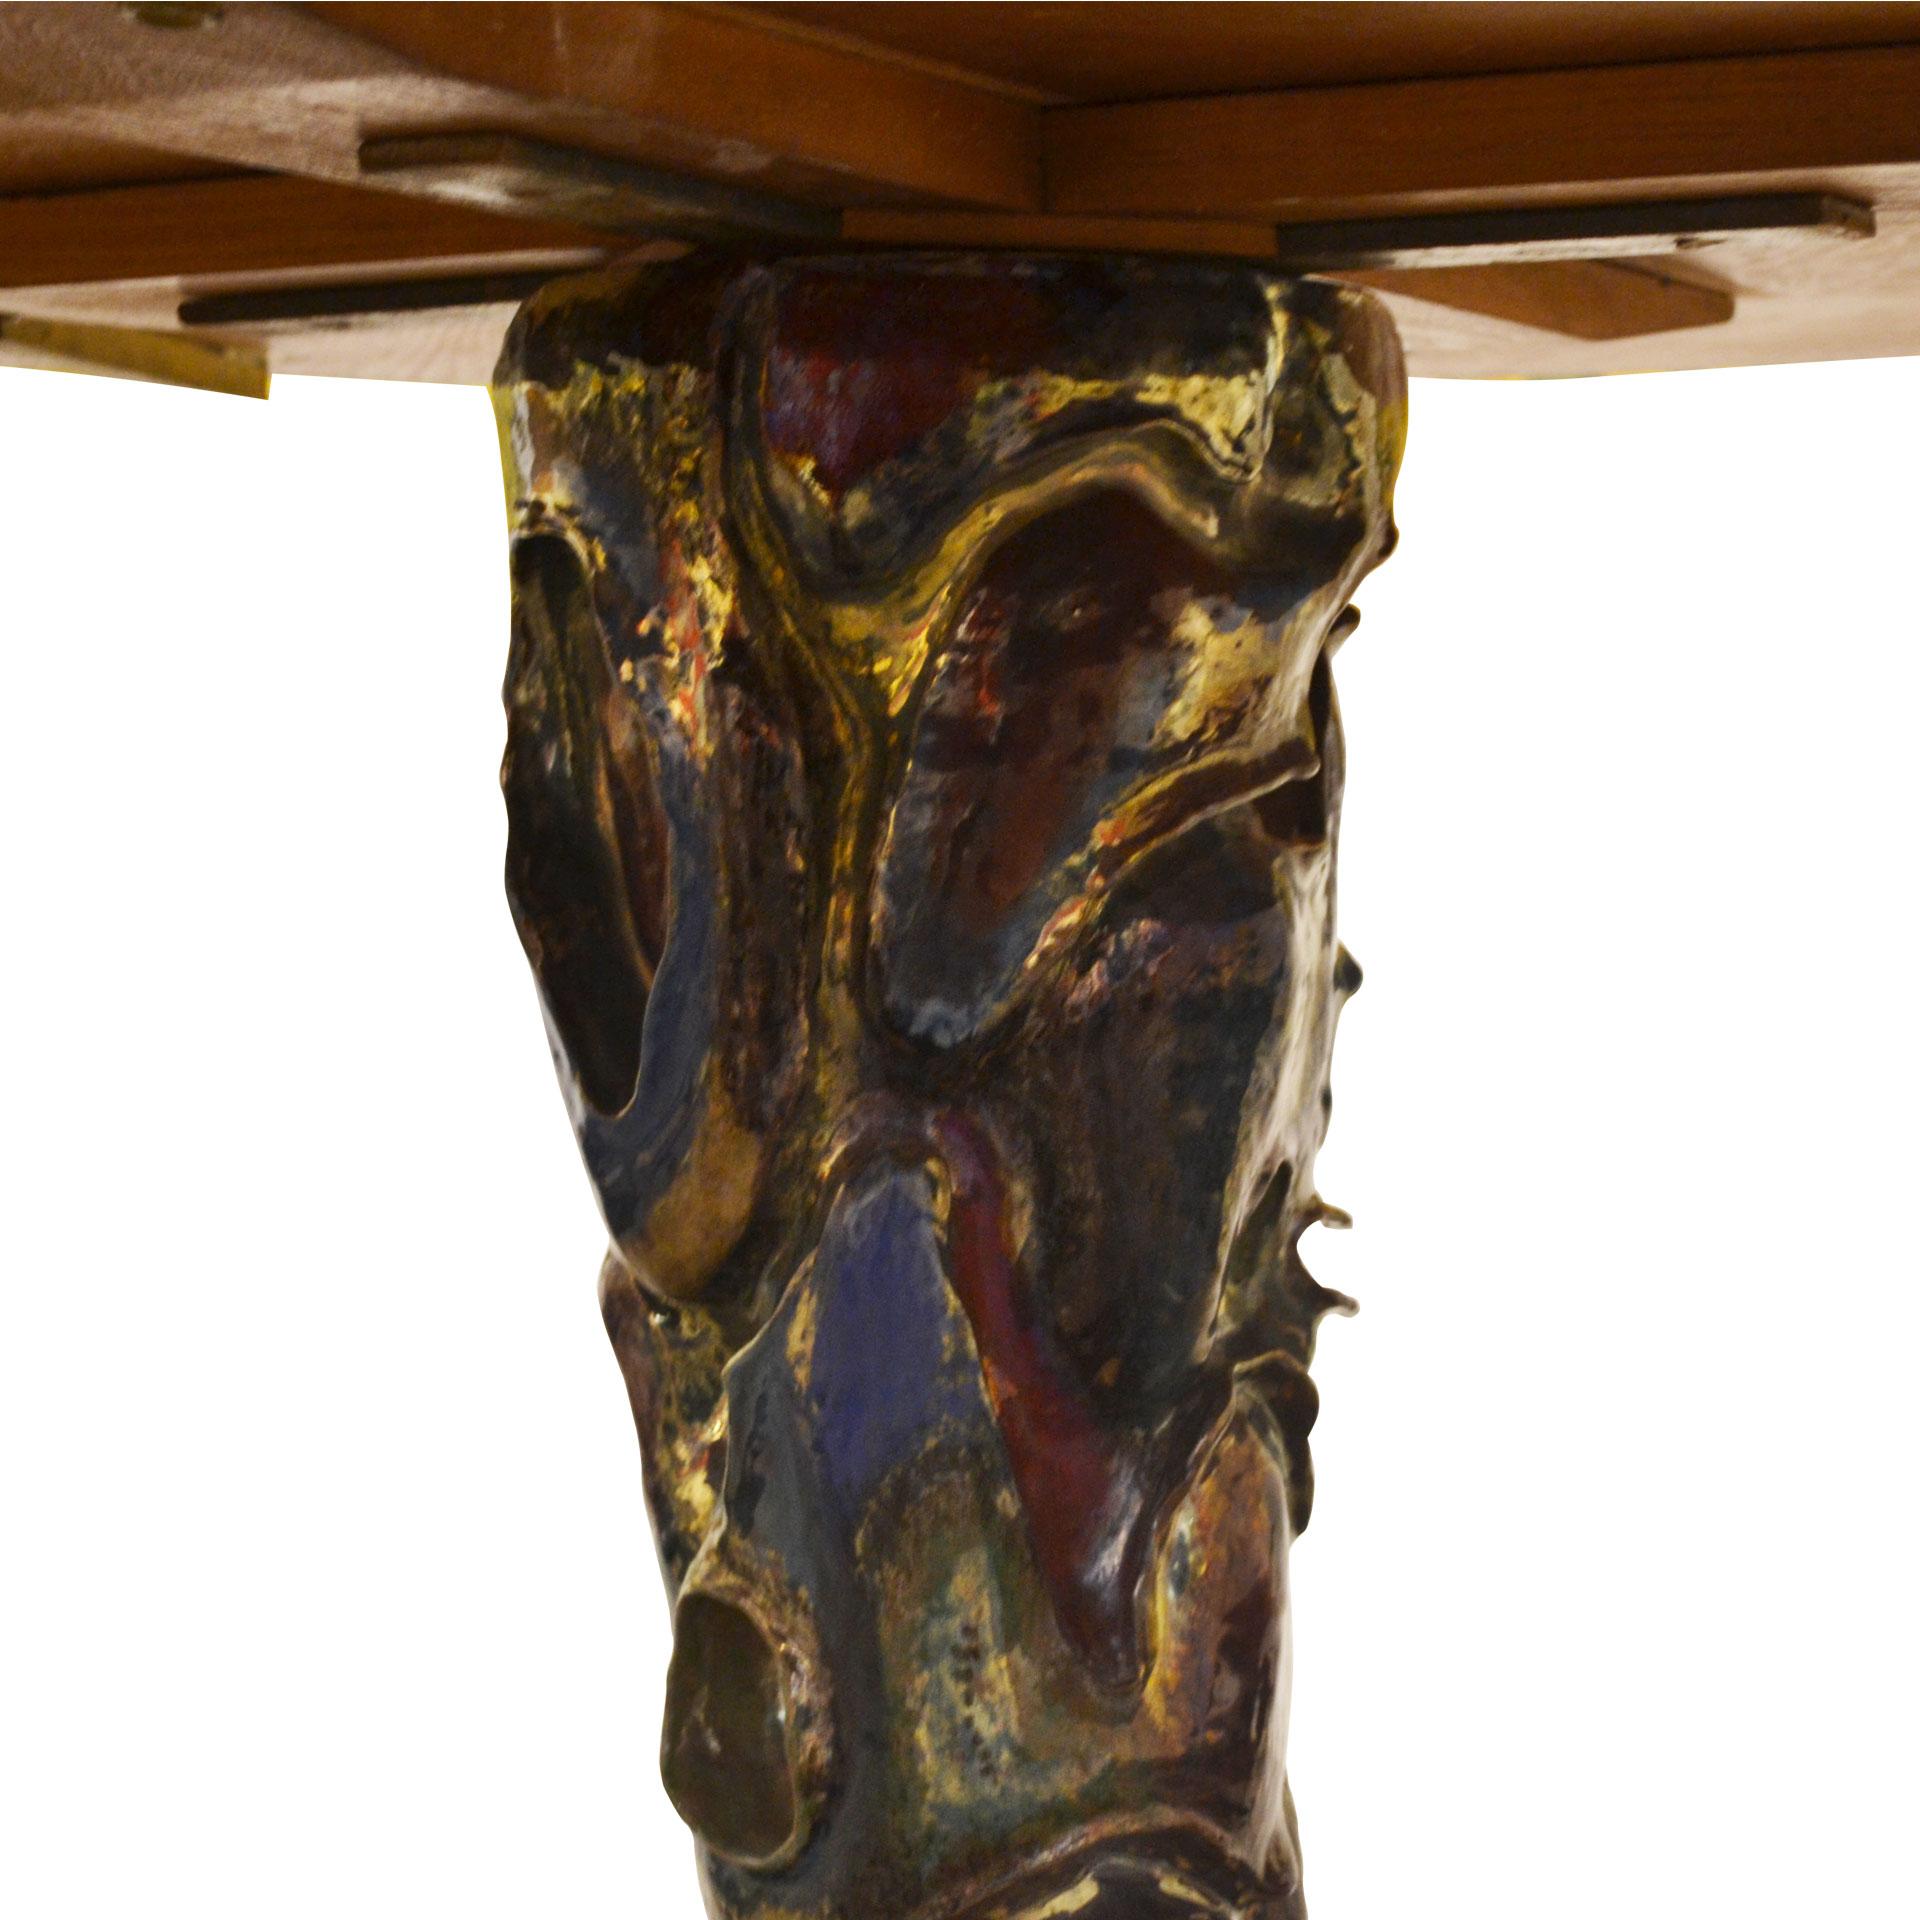 Italian 20th Century Pietro Melandri & Melchiorre Bega Round Wood and Ceramic Table